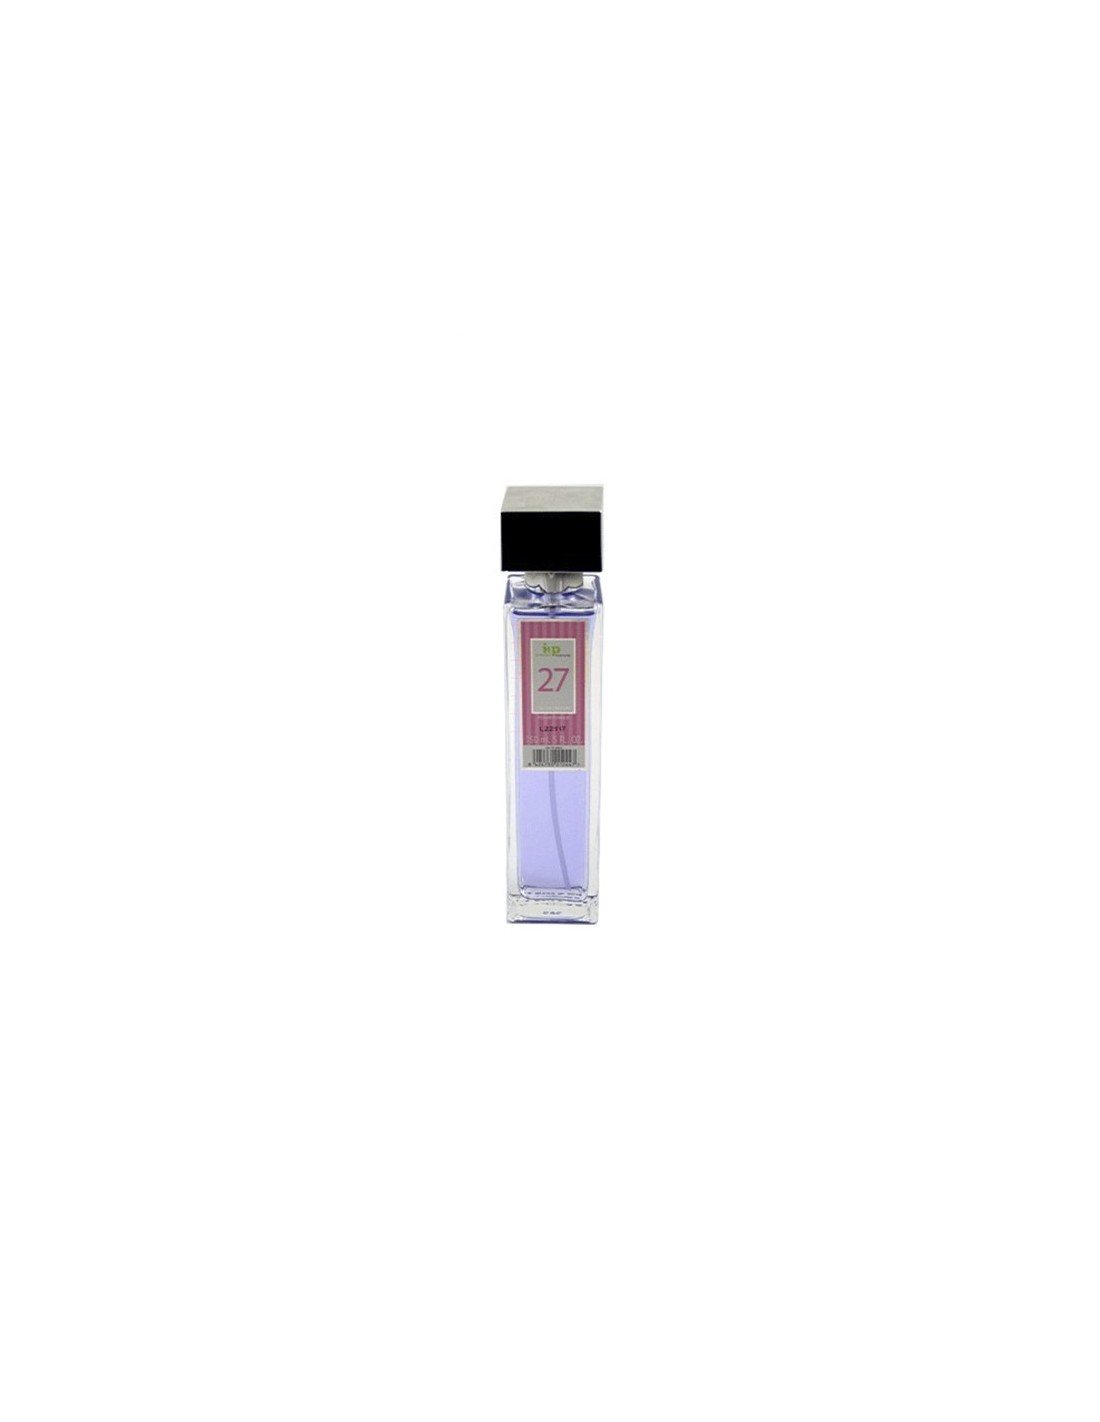 IAP Perfume Mujer N27 150ml